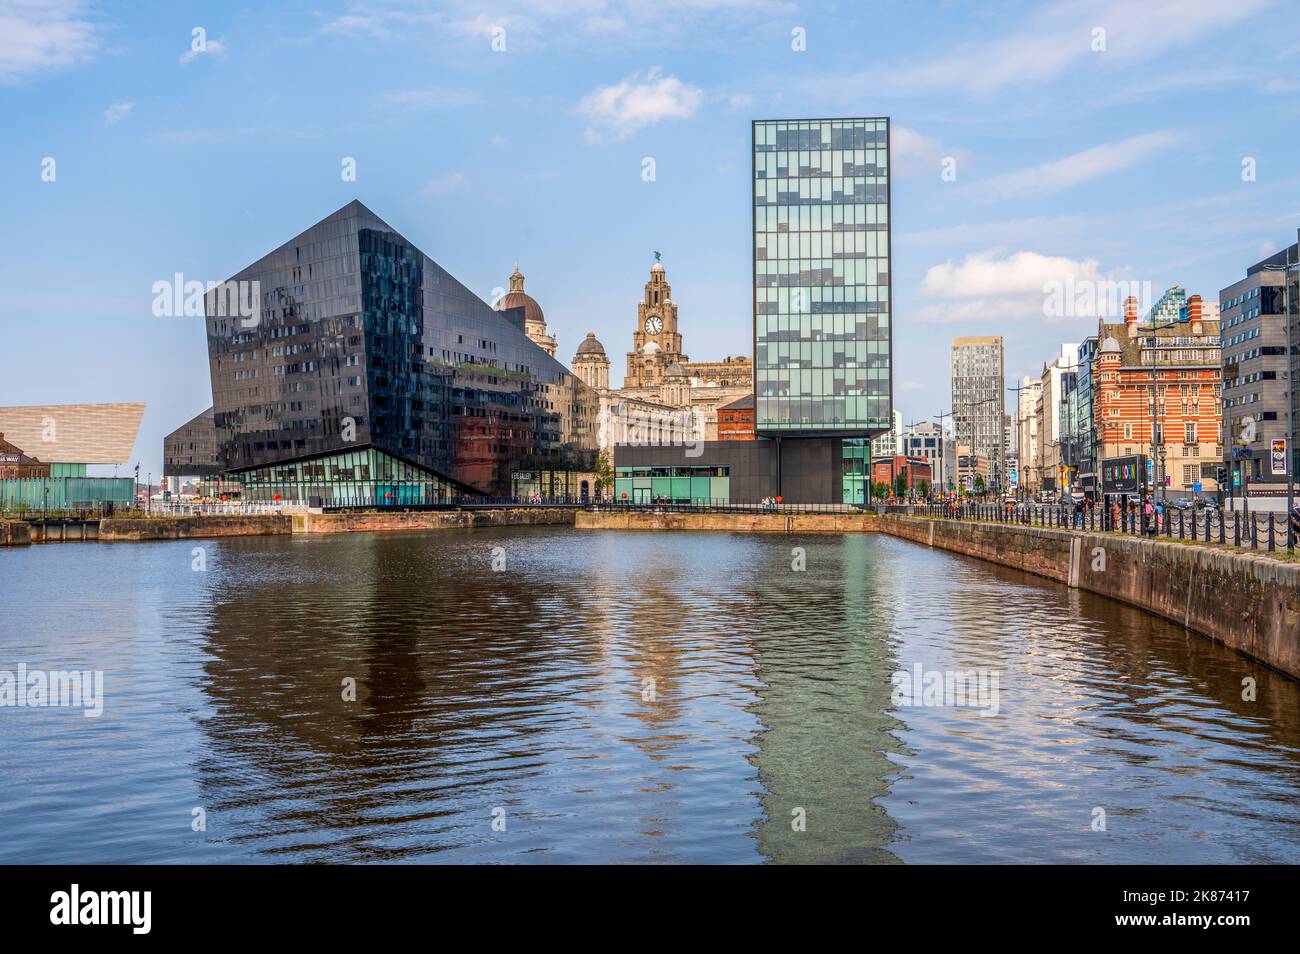 Canning Dock à côté d'Albert Dock avec le Liver Building en arrière-plan, Liverpool, Merseyside, Angleterre, Royaume-Uni, Europe Banque D'Images